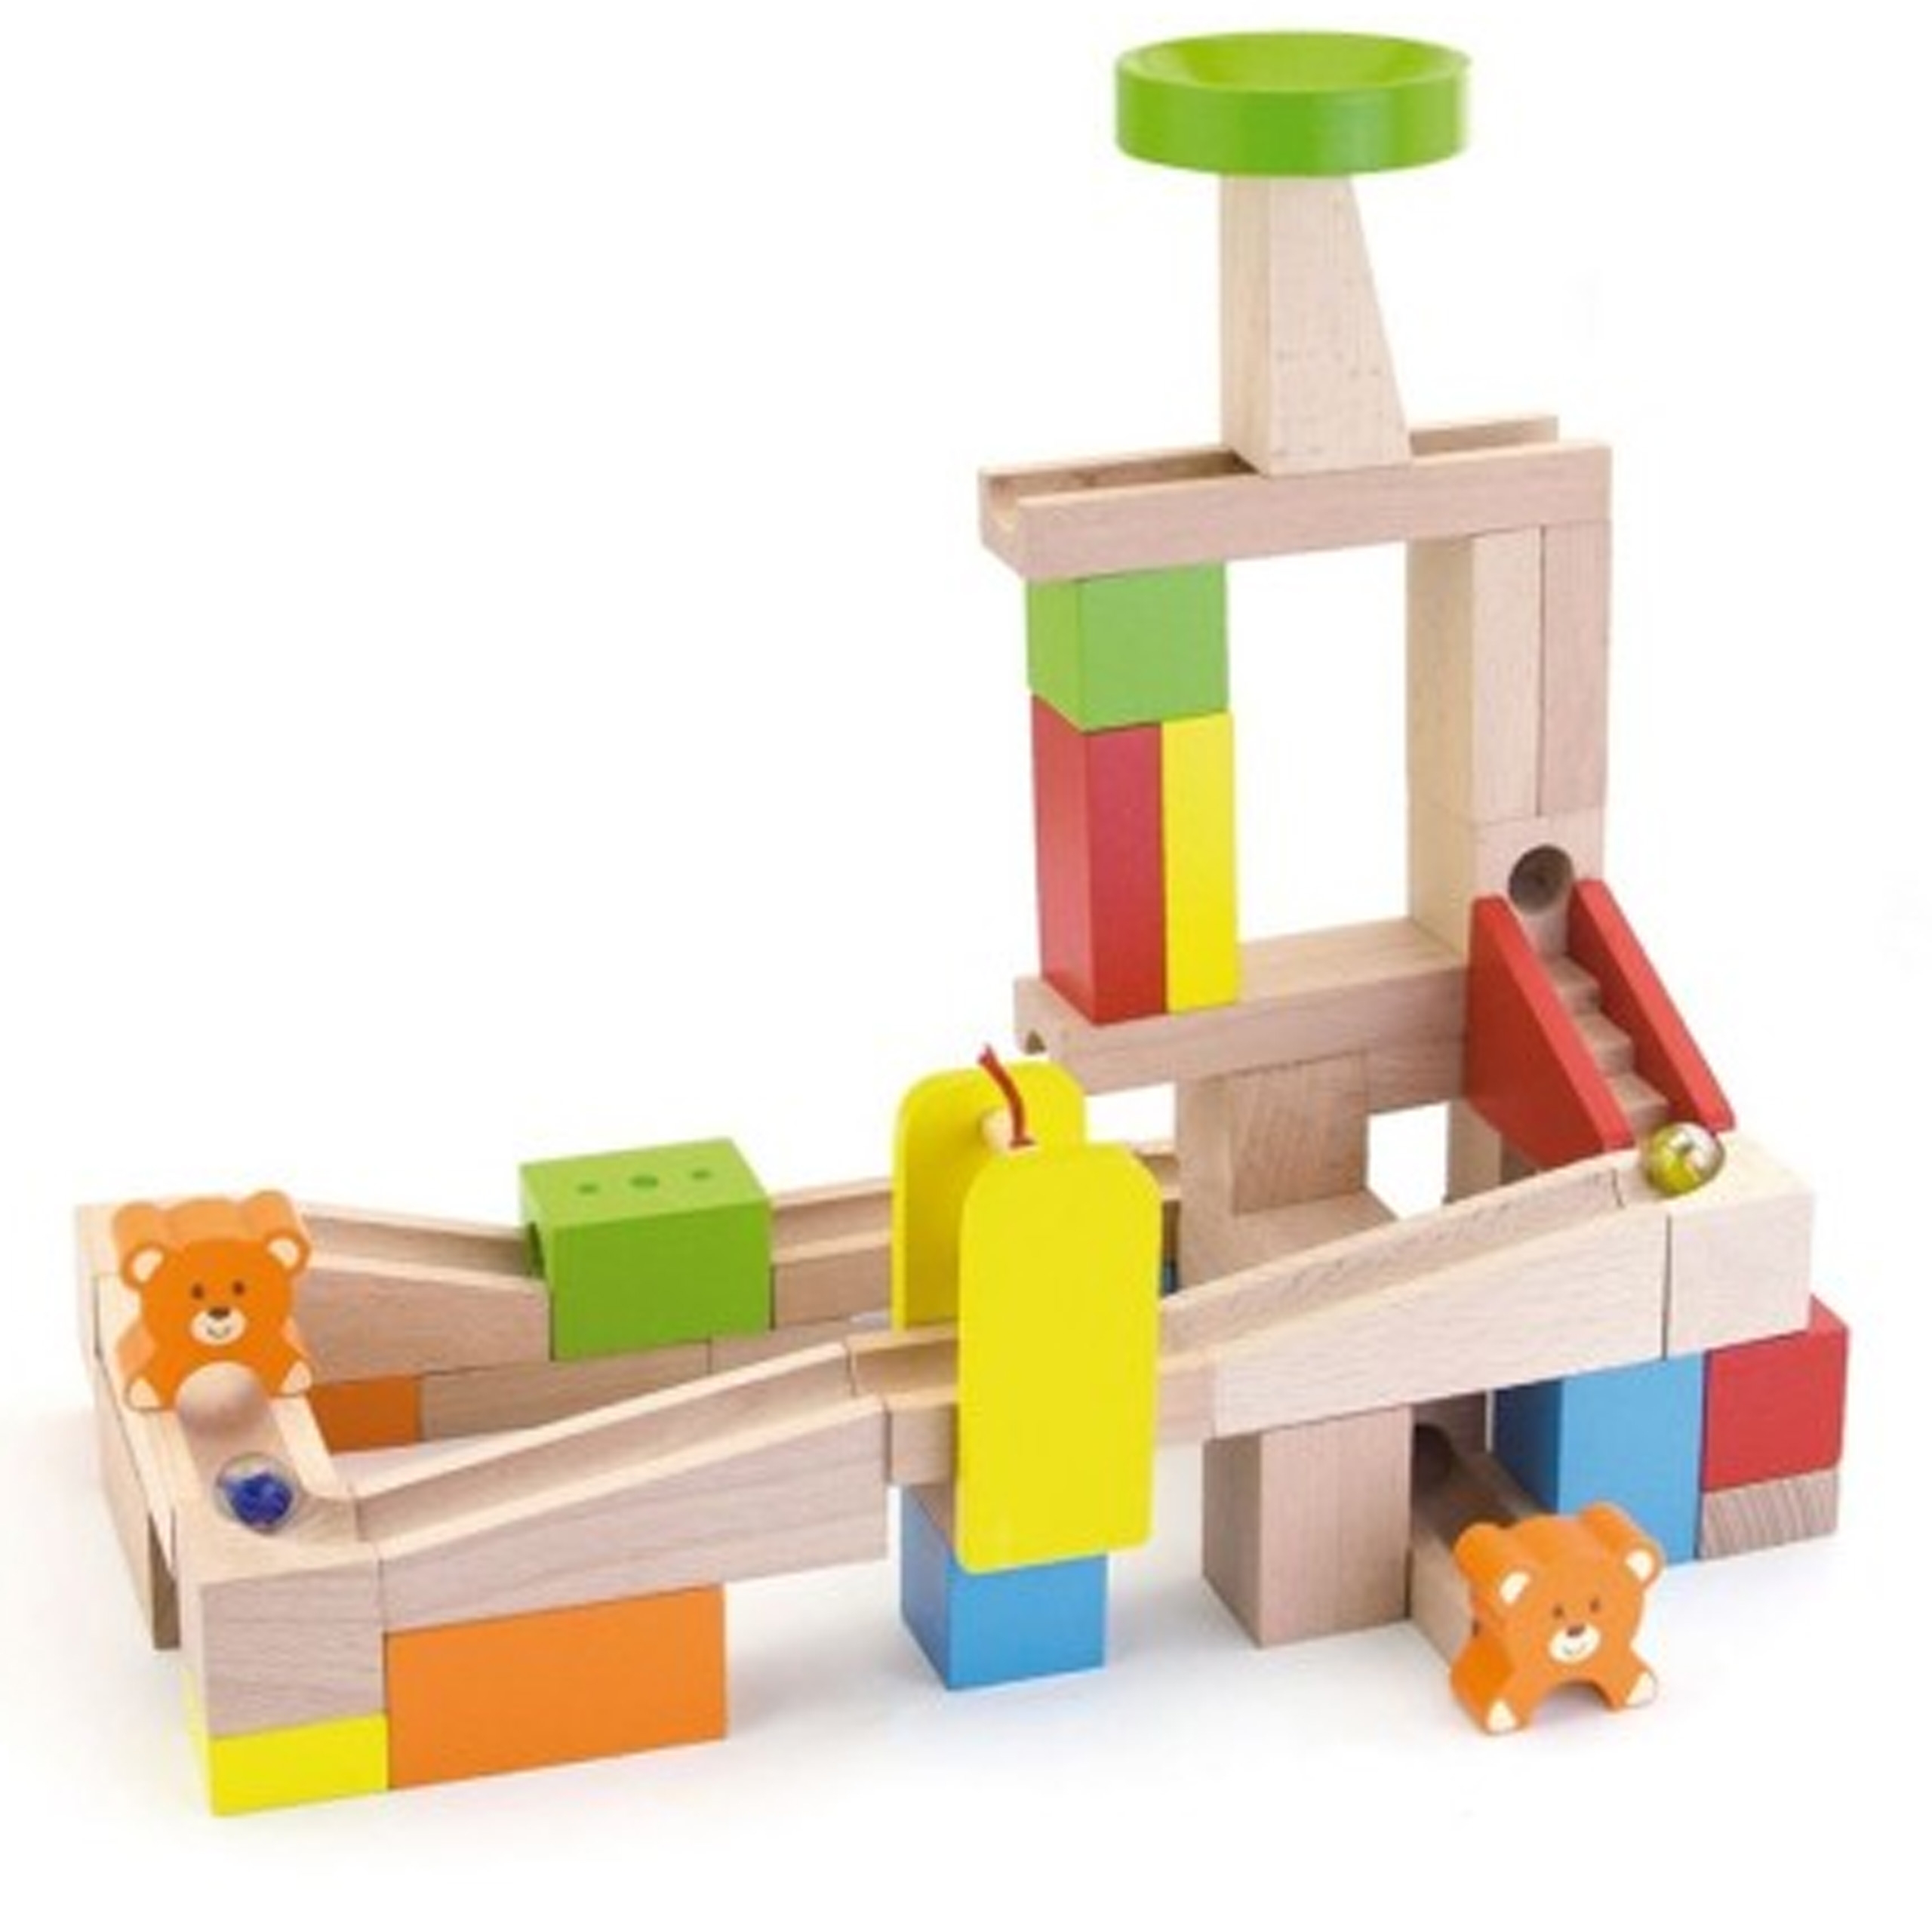 Drewniany tor na kulki kulodron 49 elementów od Viga, zabawka dla dzieci